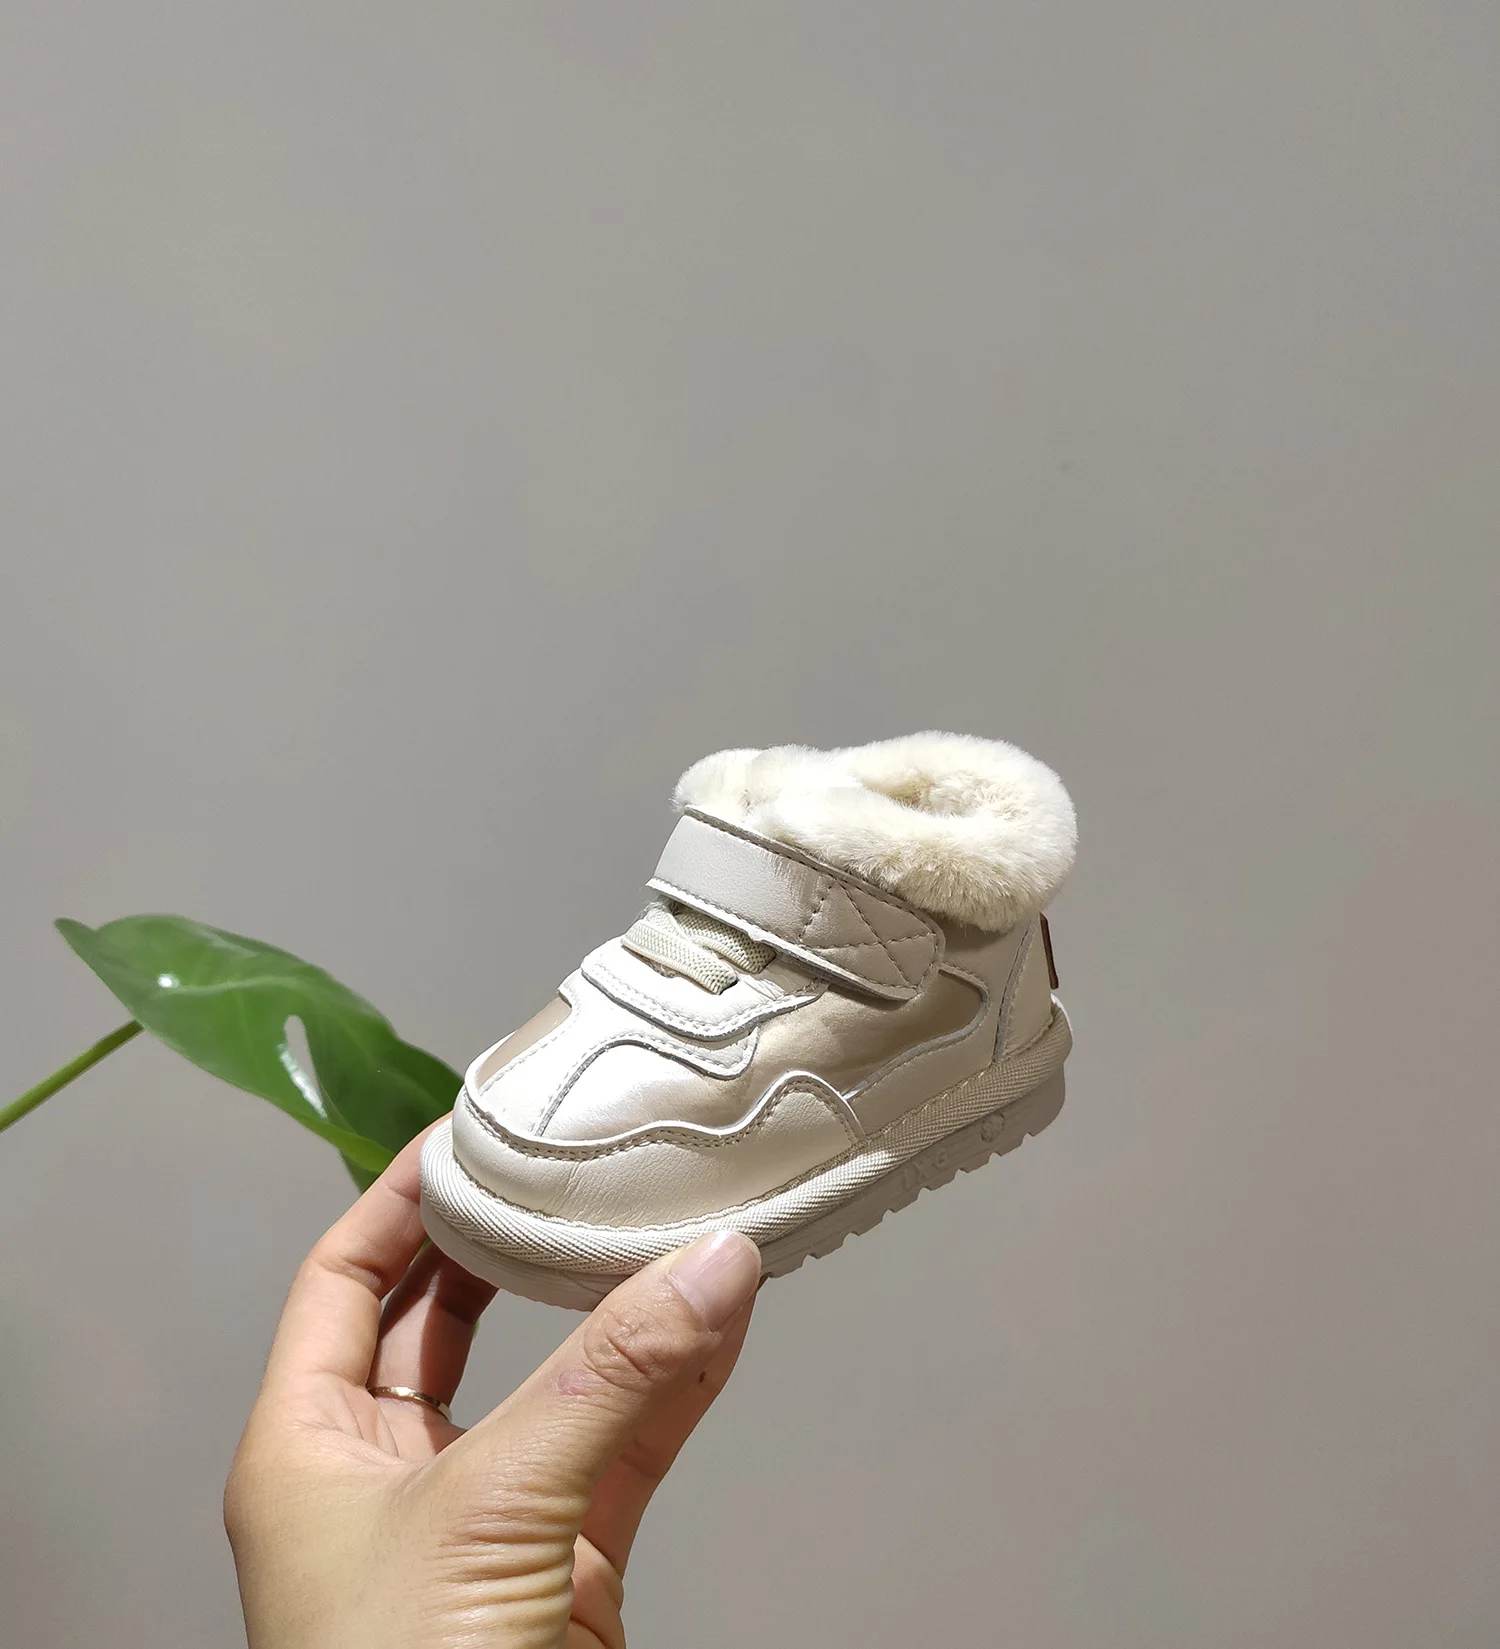 Высокое качество зимняя детская обувь для маленьких девочек и мальчиков зимние ботинки теплые плюшевые удобные детские туфли обувь для младенцев